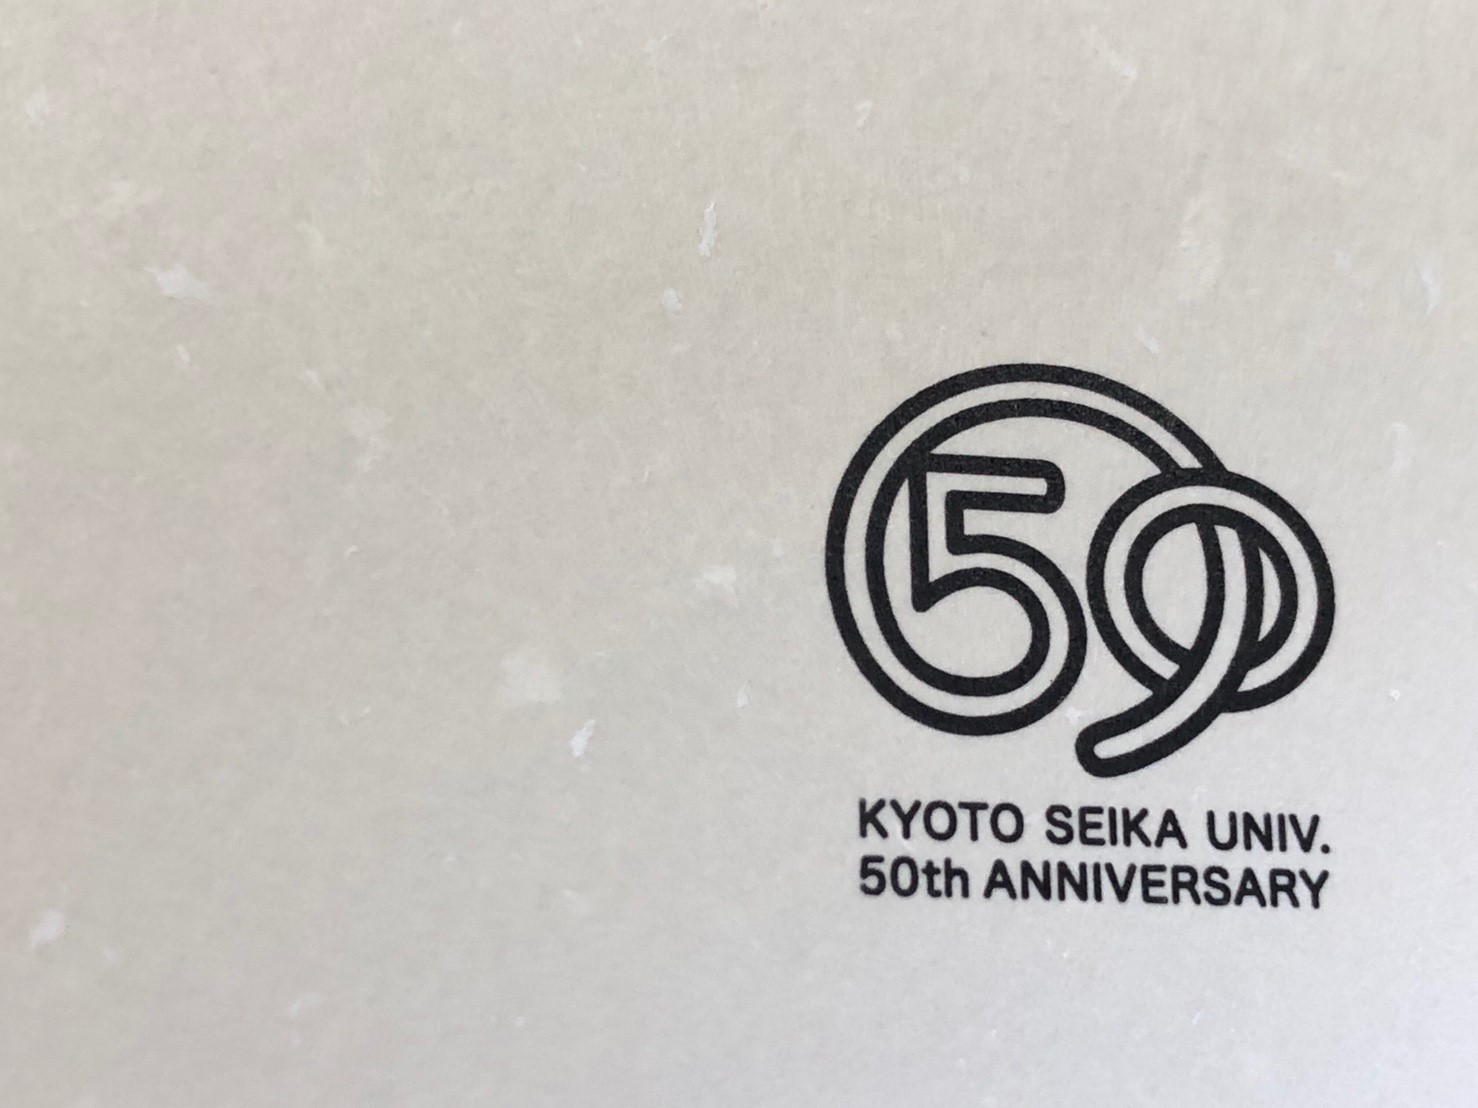 ร่วมงานเฉลิมฉลองครบรอบ 50 ปี มหาวิทยาลัยเกียวโตเซกะ ประเทศญี่ปุ่น